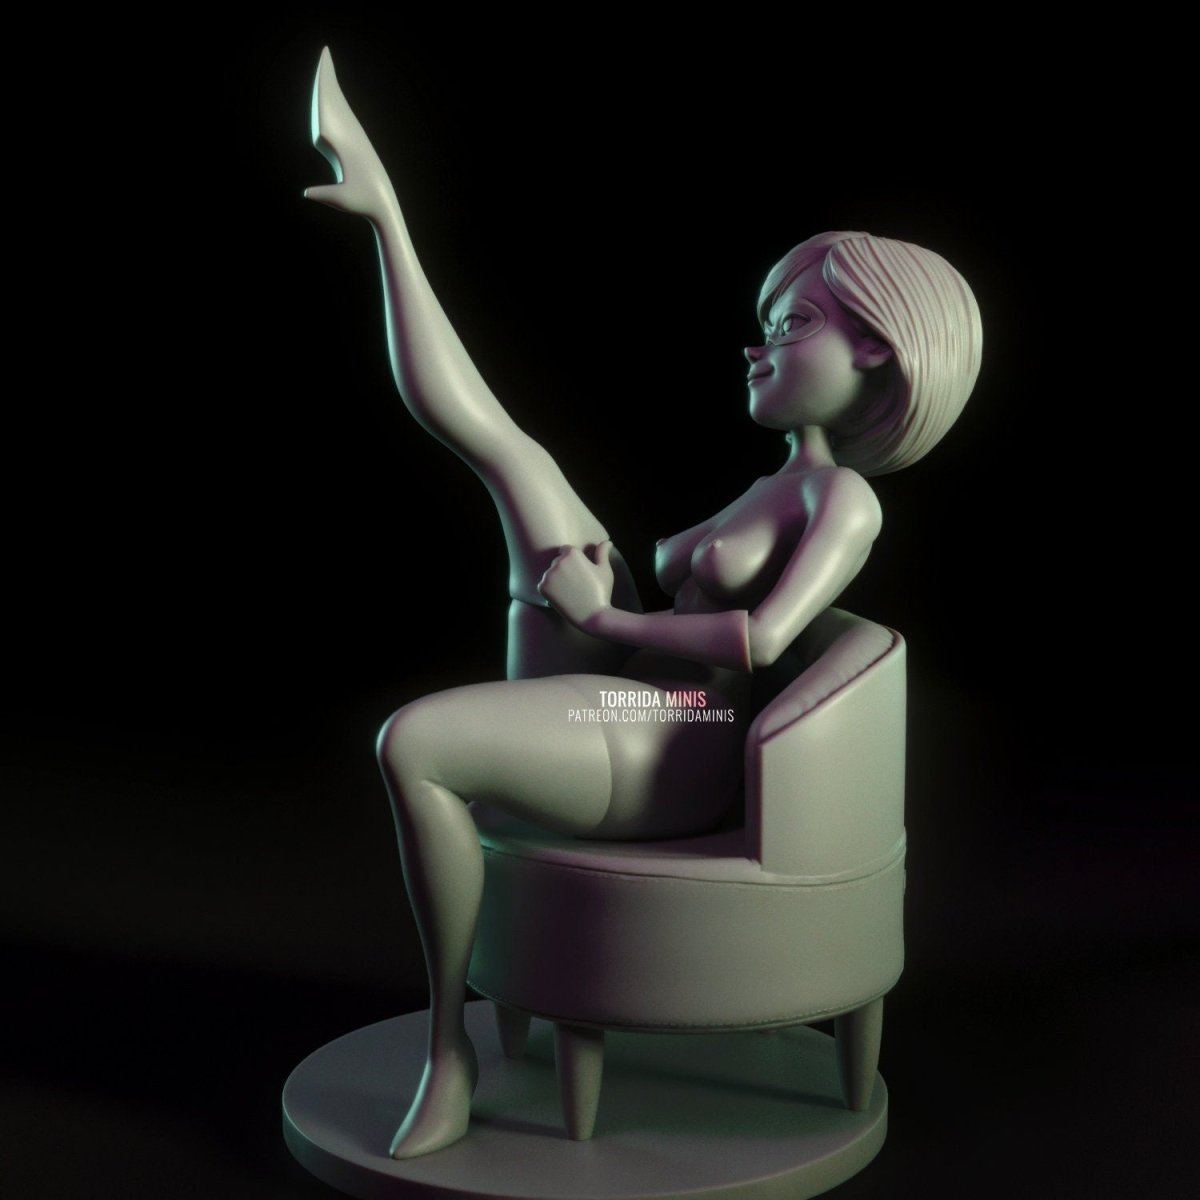 Elastigirl Girl The Incredibles NSFW 3D Printed Fanart